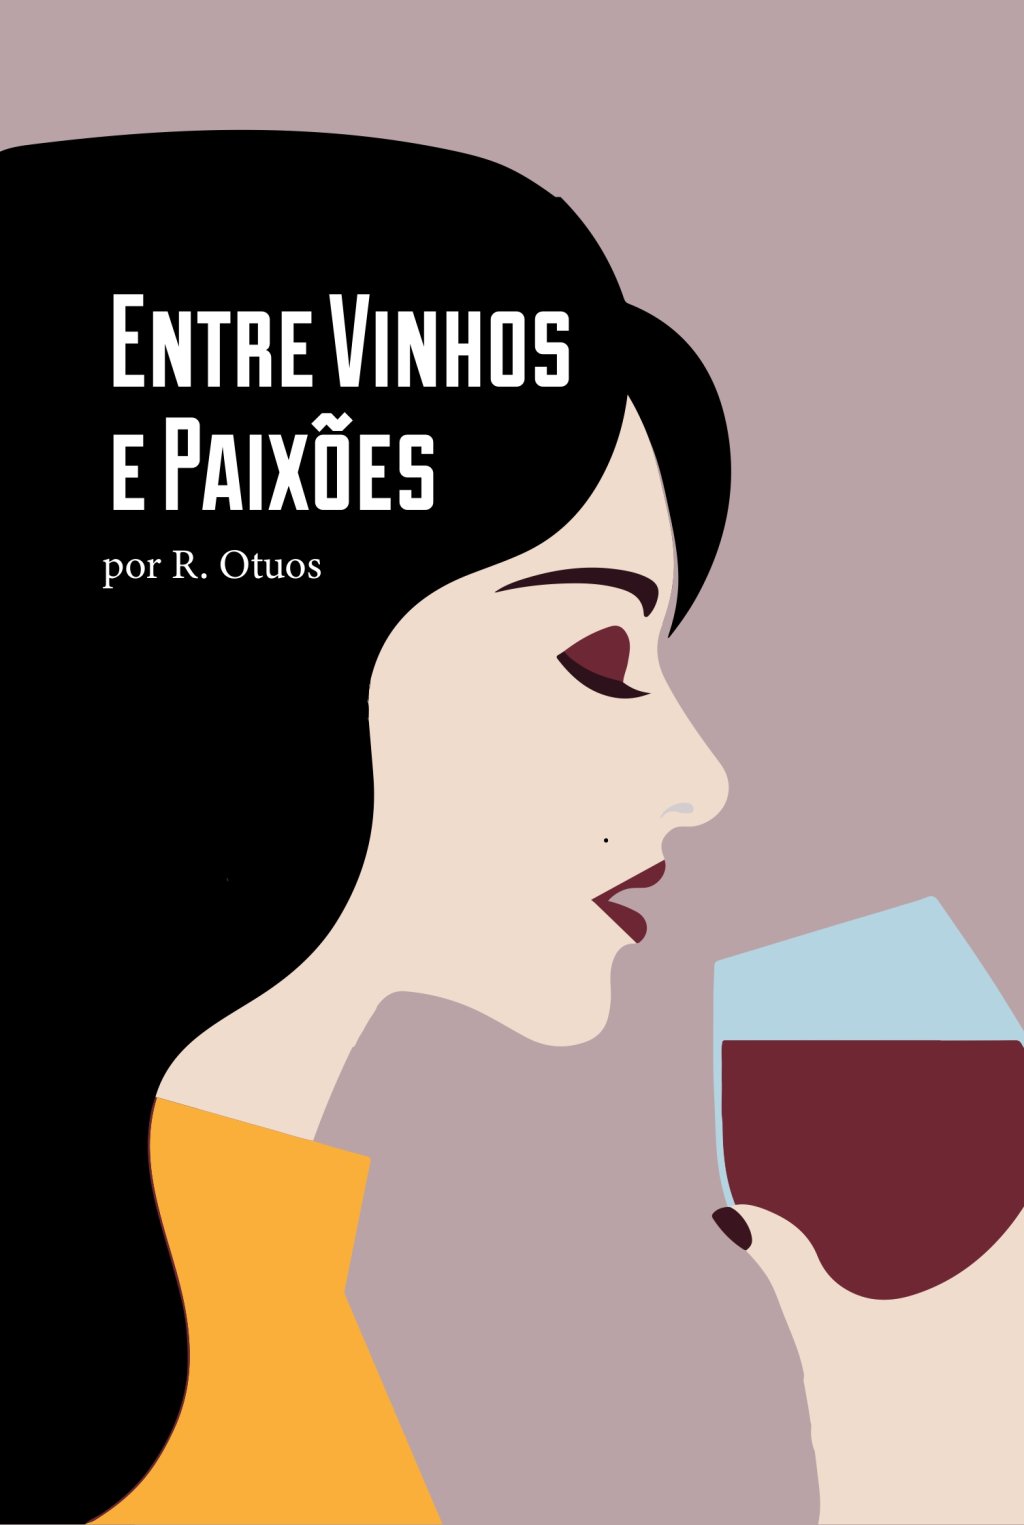 Entre vinhos e paixoes